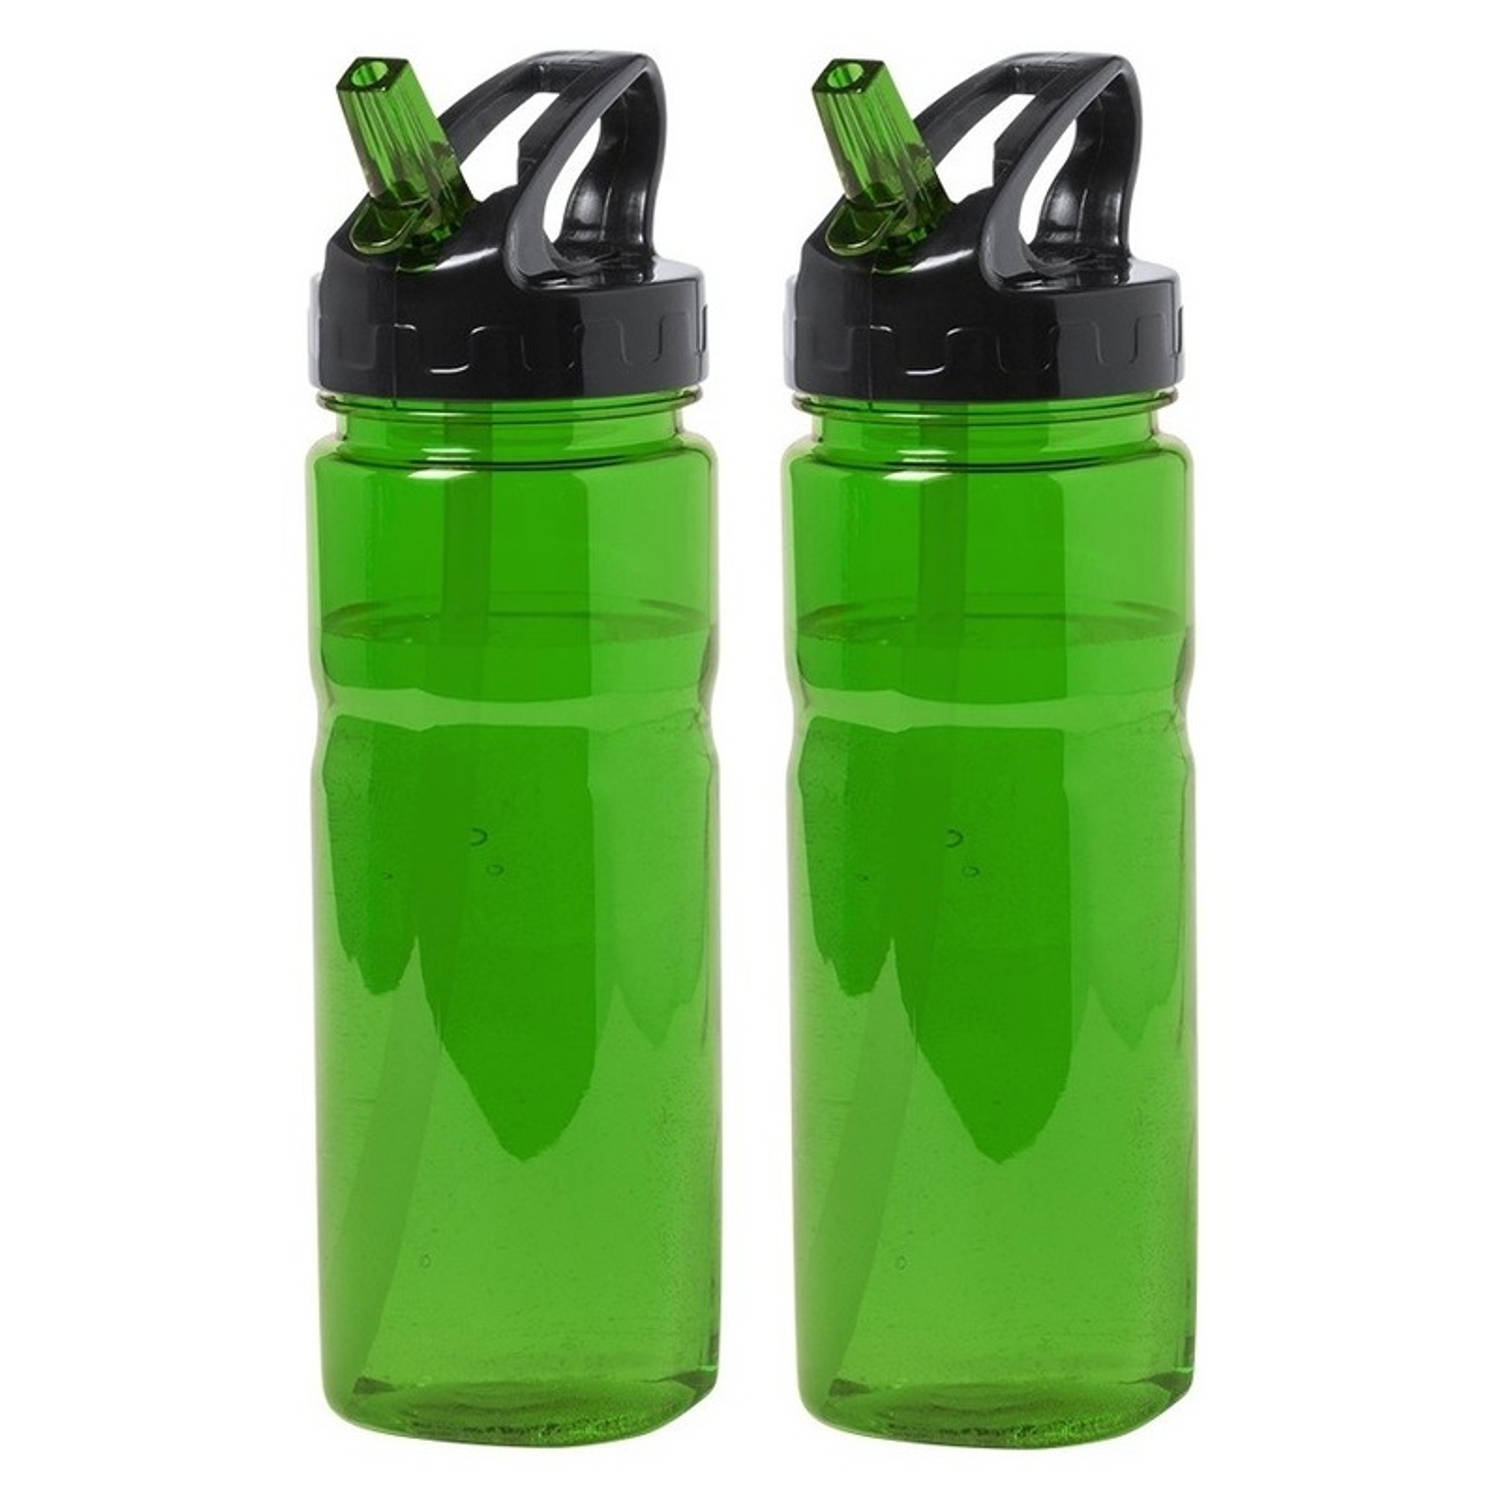 2x Drinkfles/waterfles groen met schroefdop 650 ml - Drinkflessen